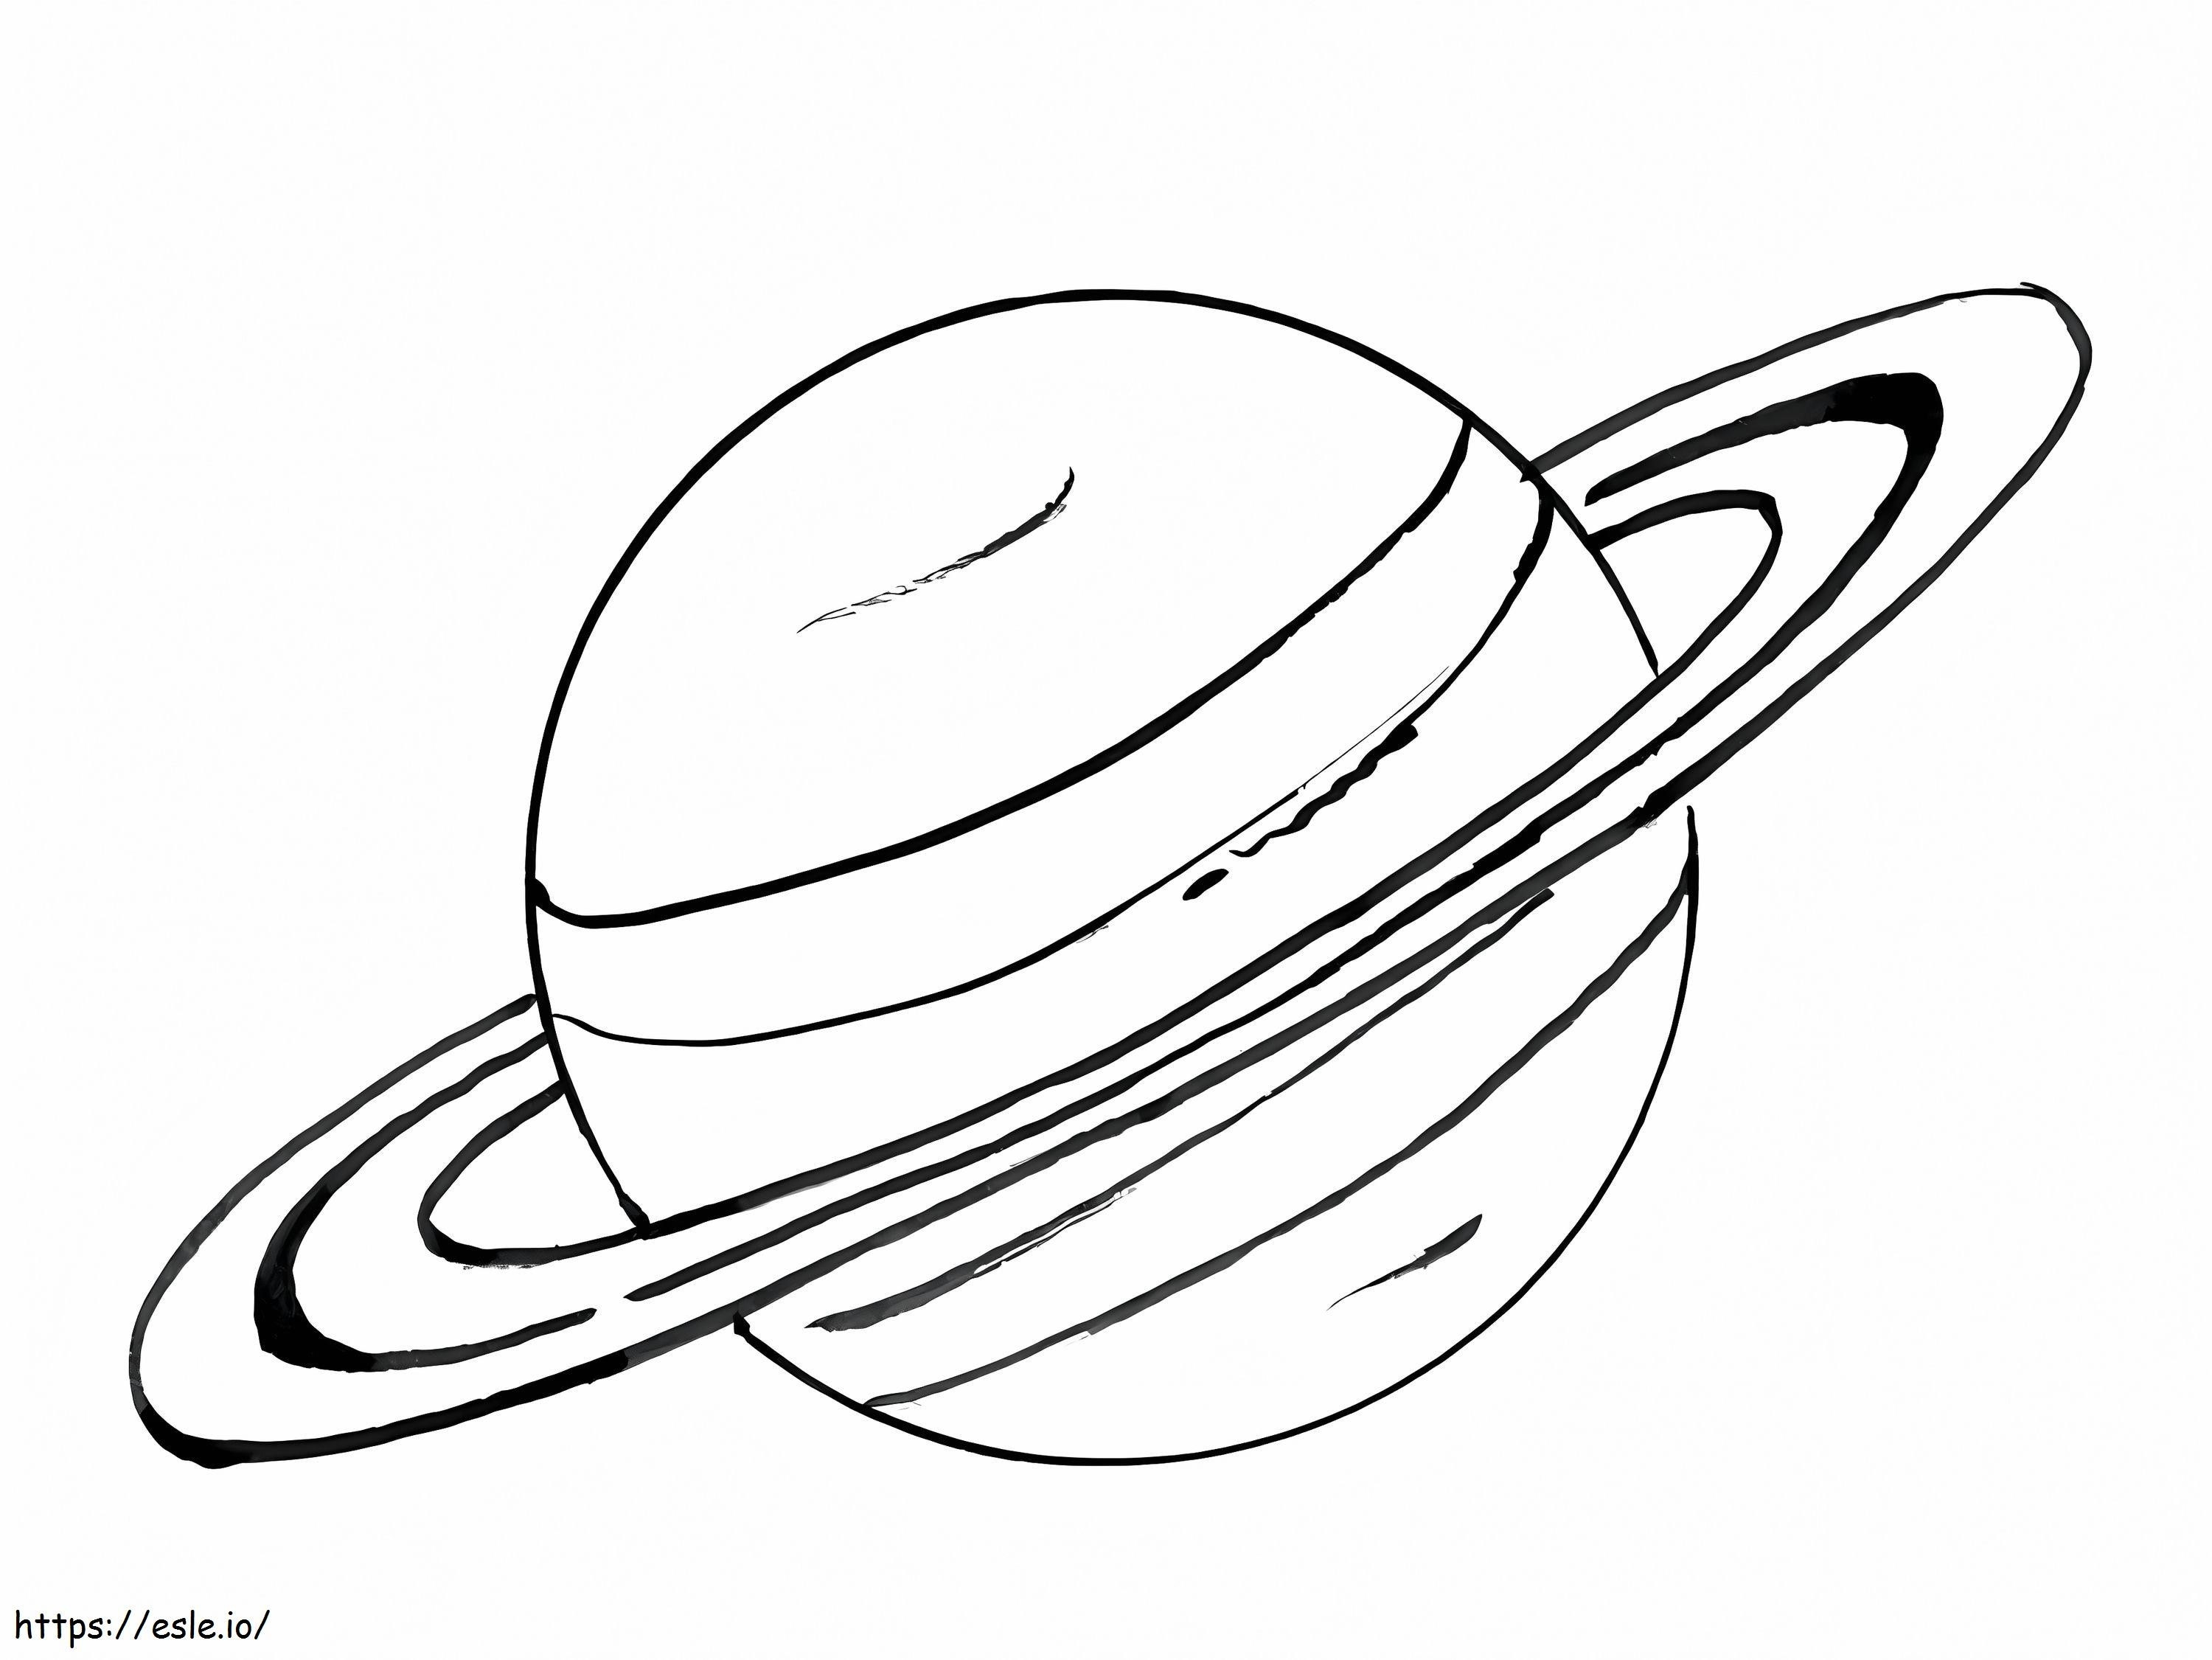 Saturno 2 da colorare